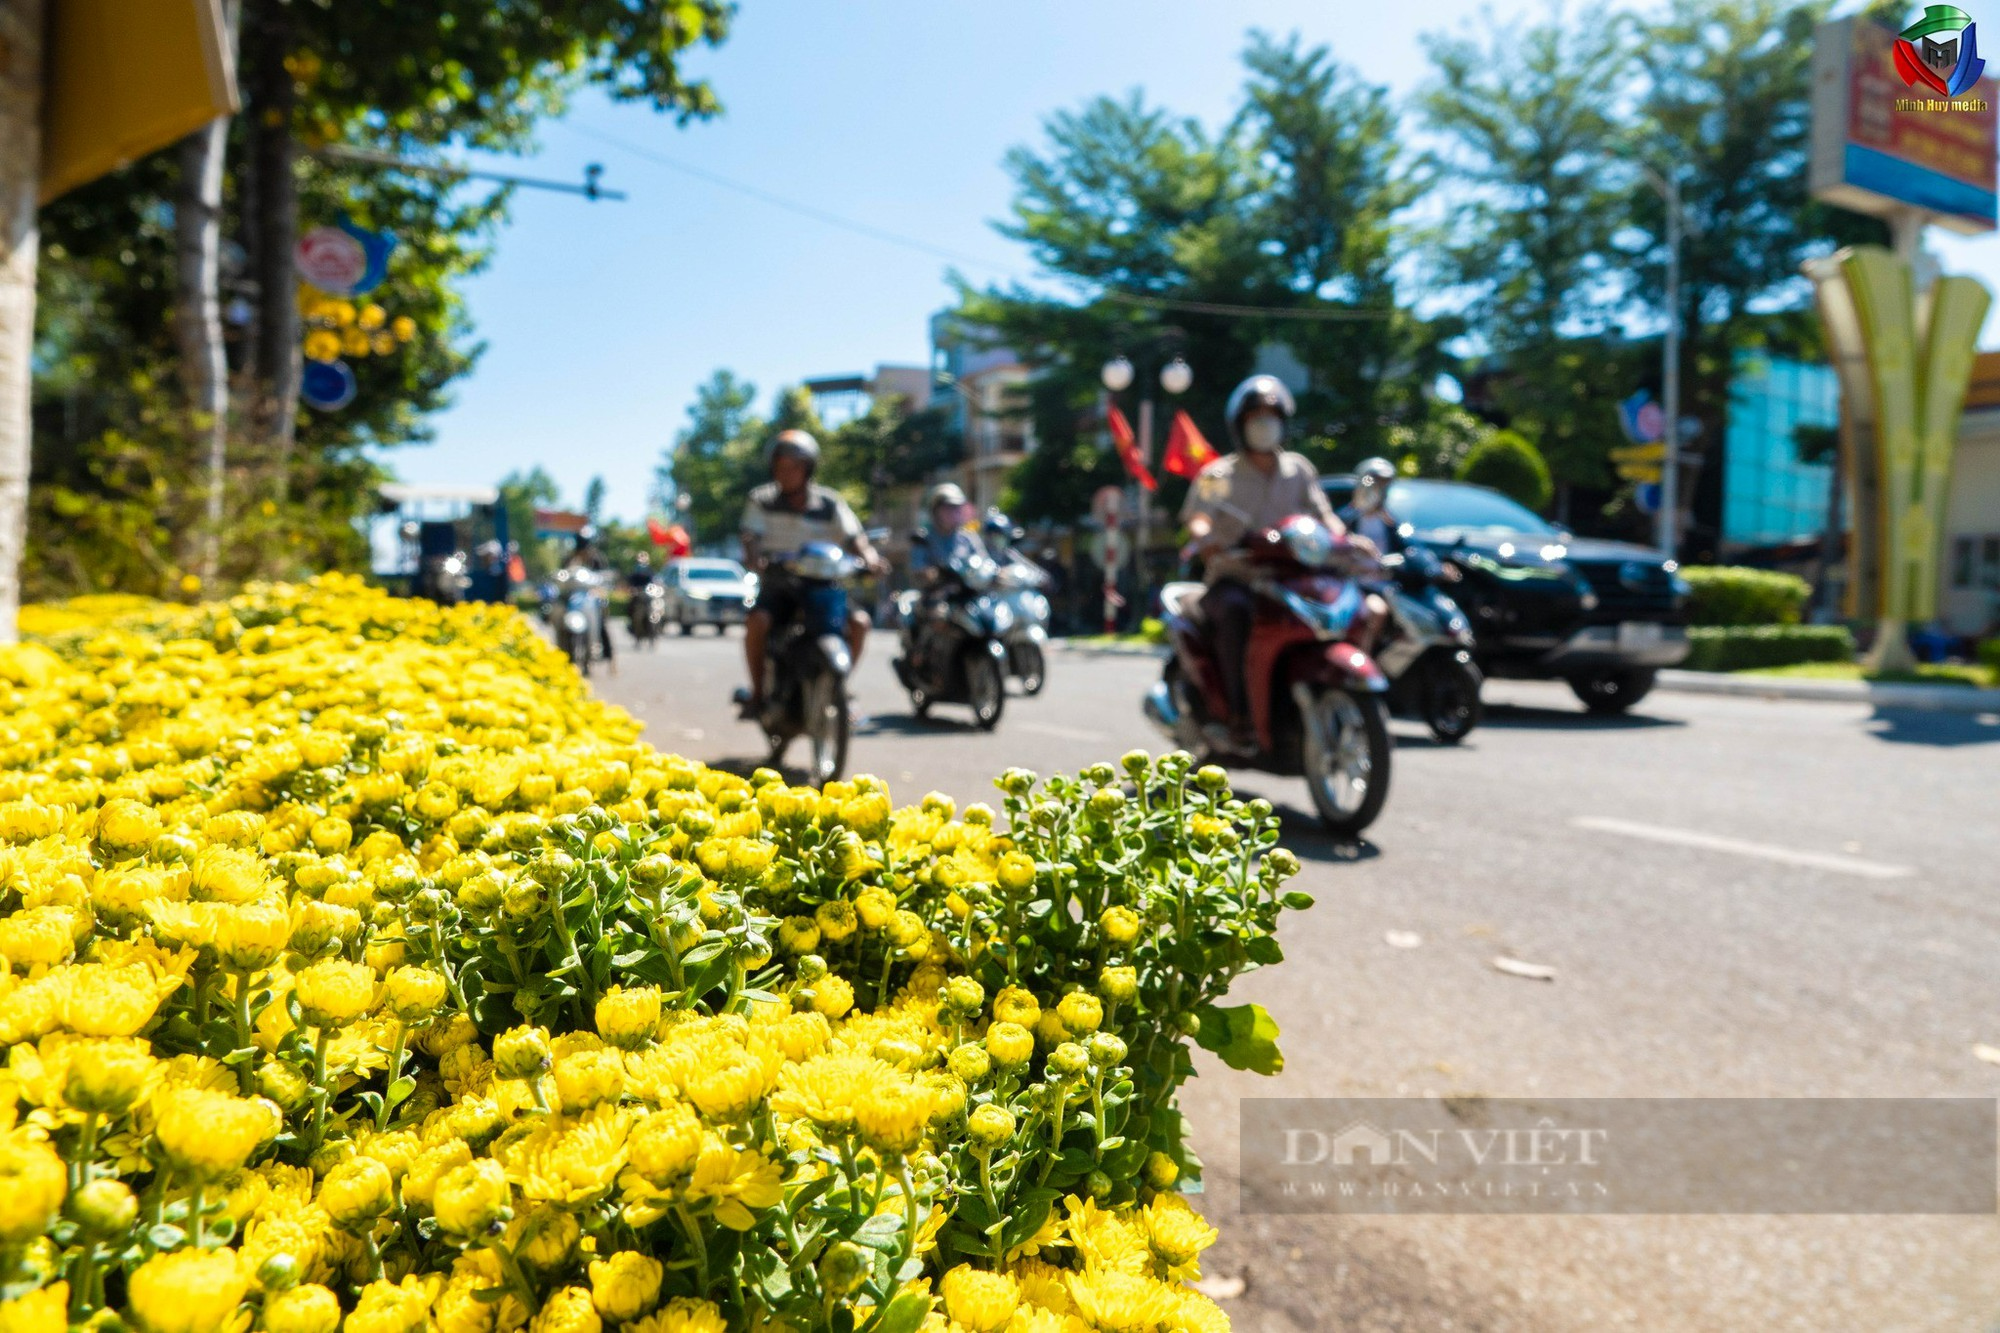 Hoa cảnh khắp các vùng miền “đổ bộ” về phố khoe sắc đón Tết ở Ninh Thuận - Ảnh 14.